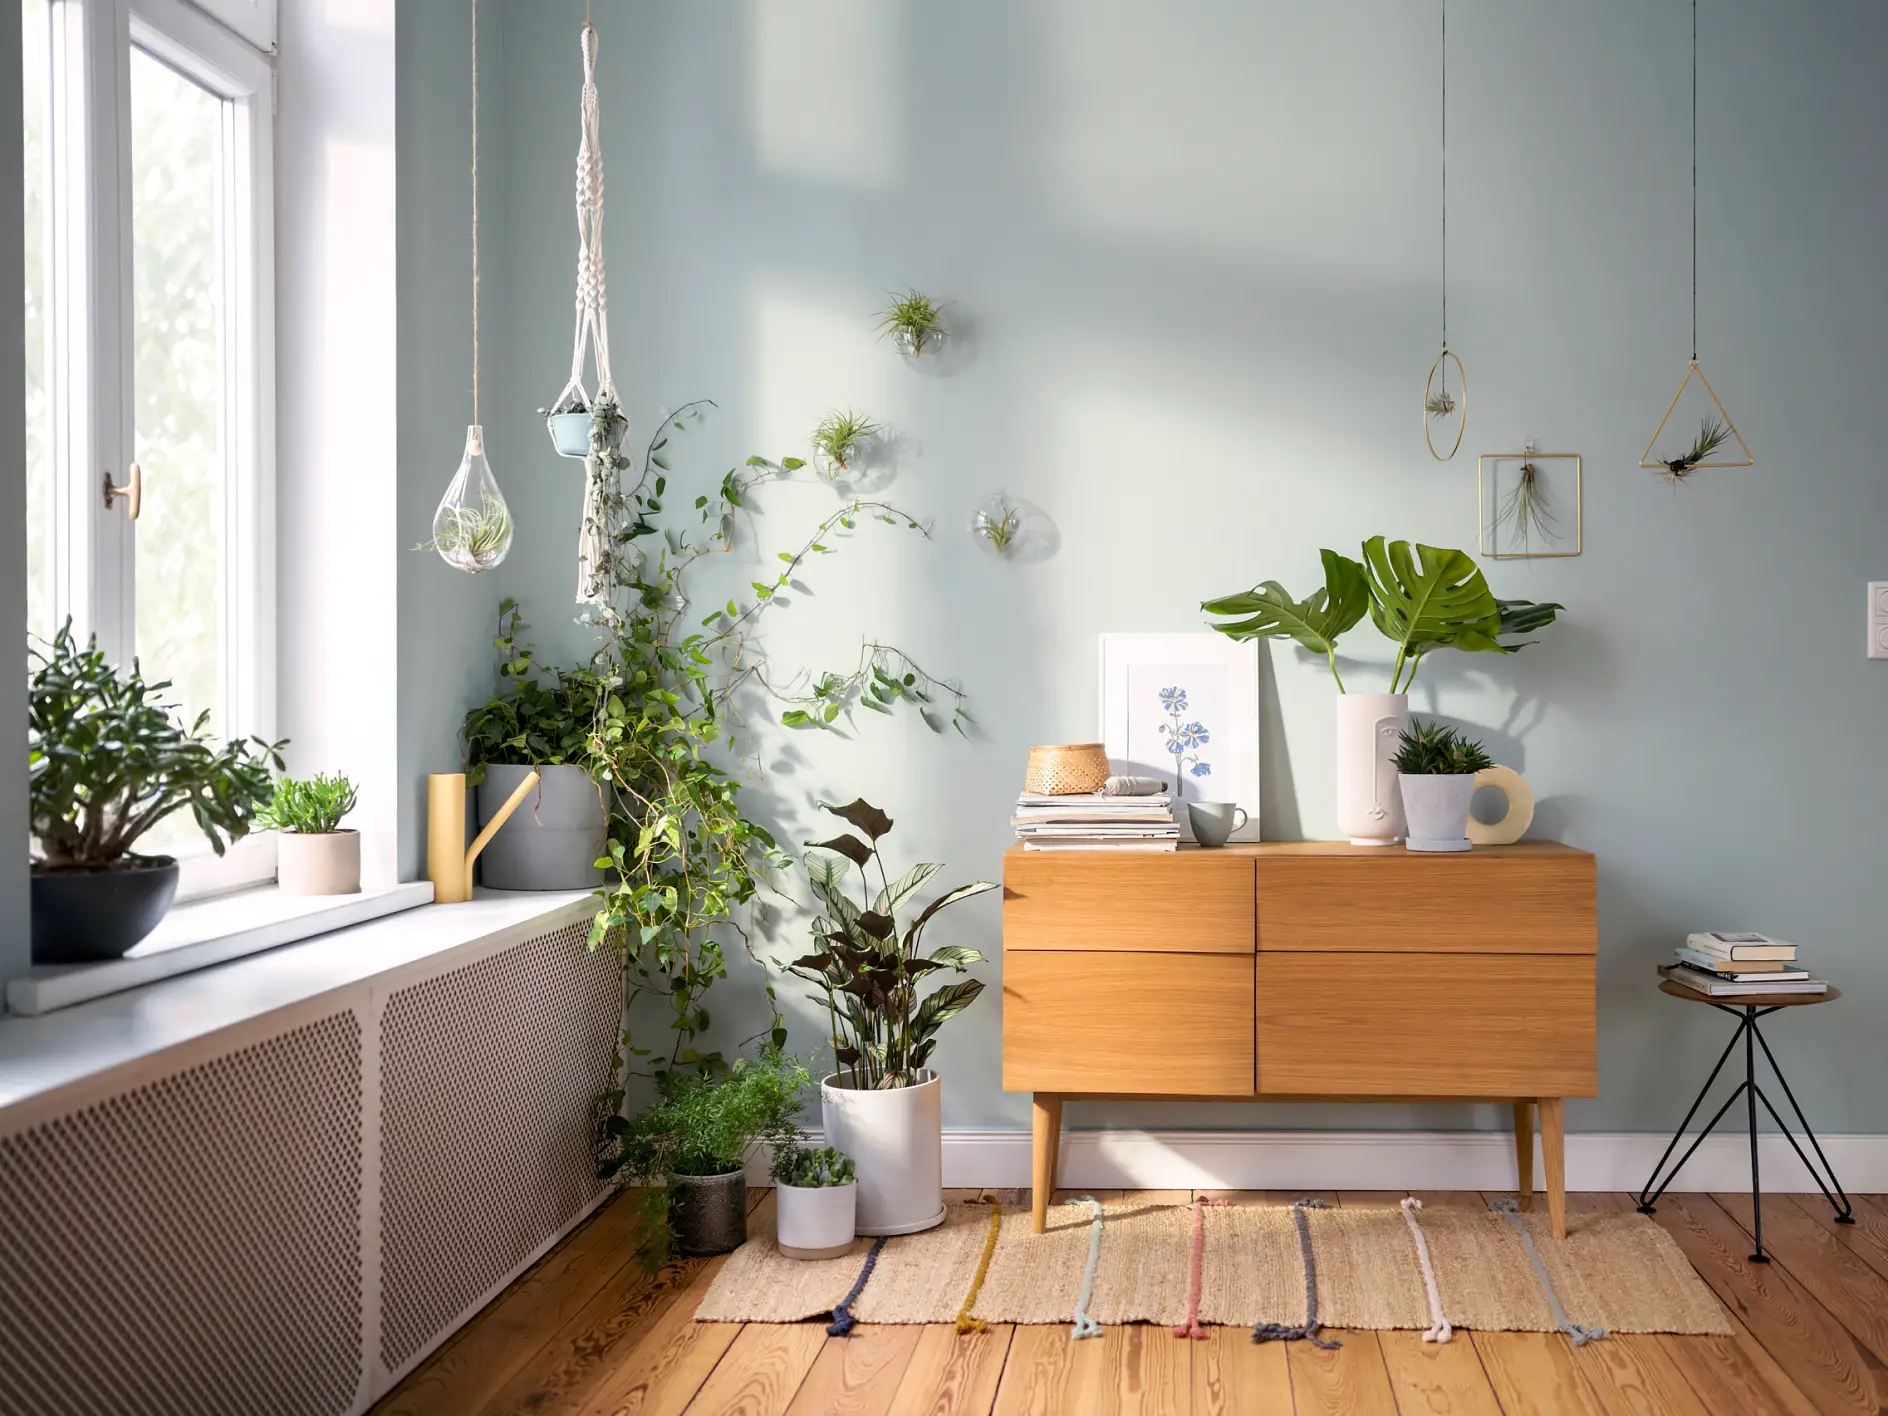 Pflanzen-Deko – Teaser: Kommode steht in Zimmer, darauf und seitlich sind Pflanzenvasen.